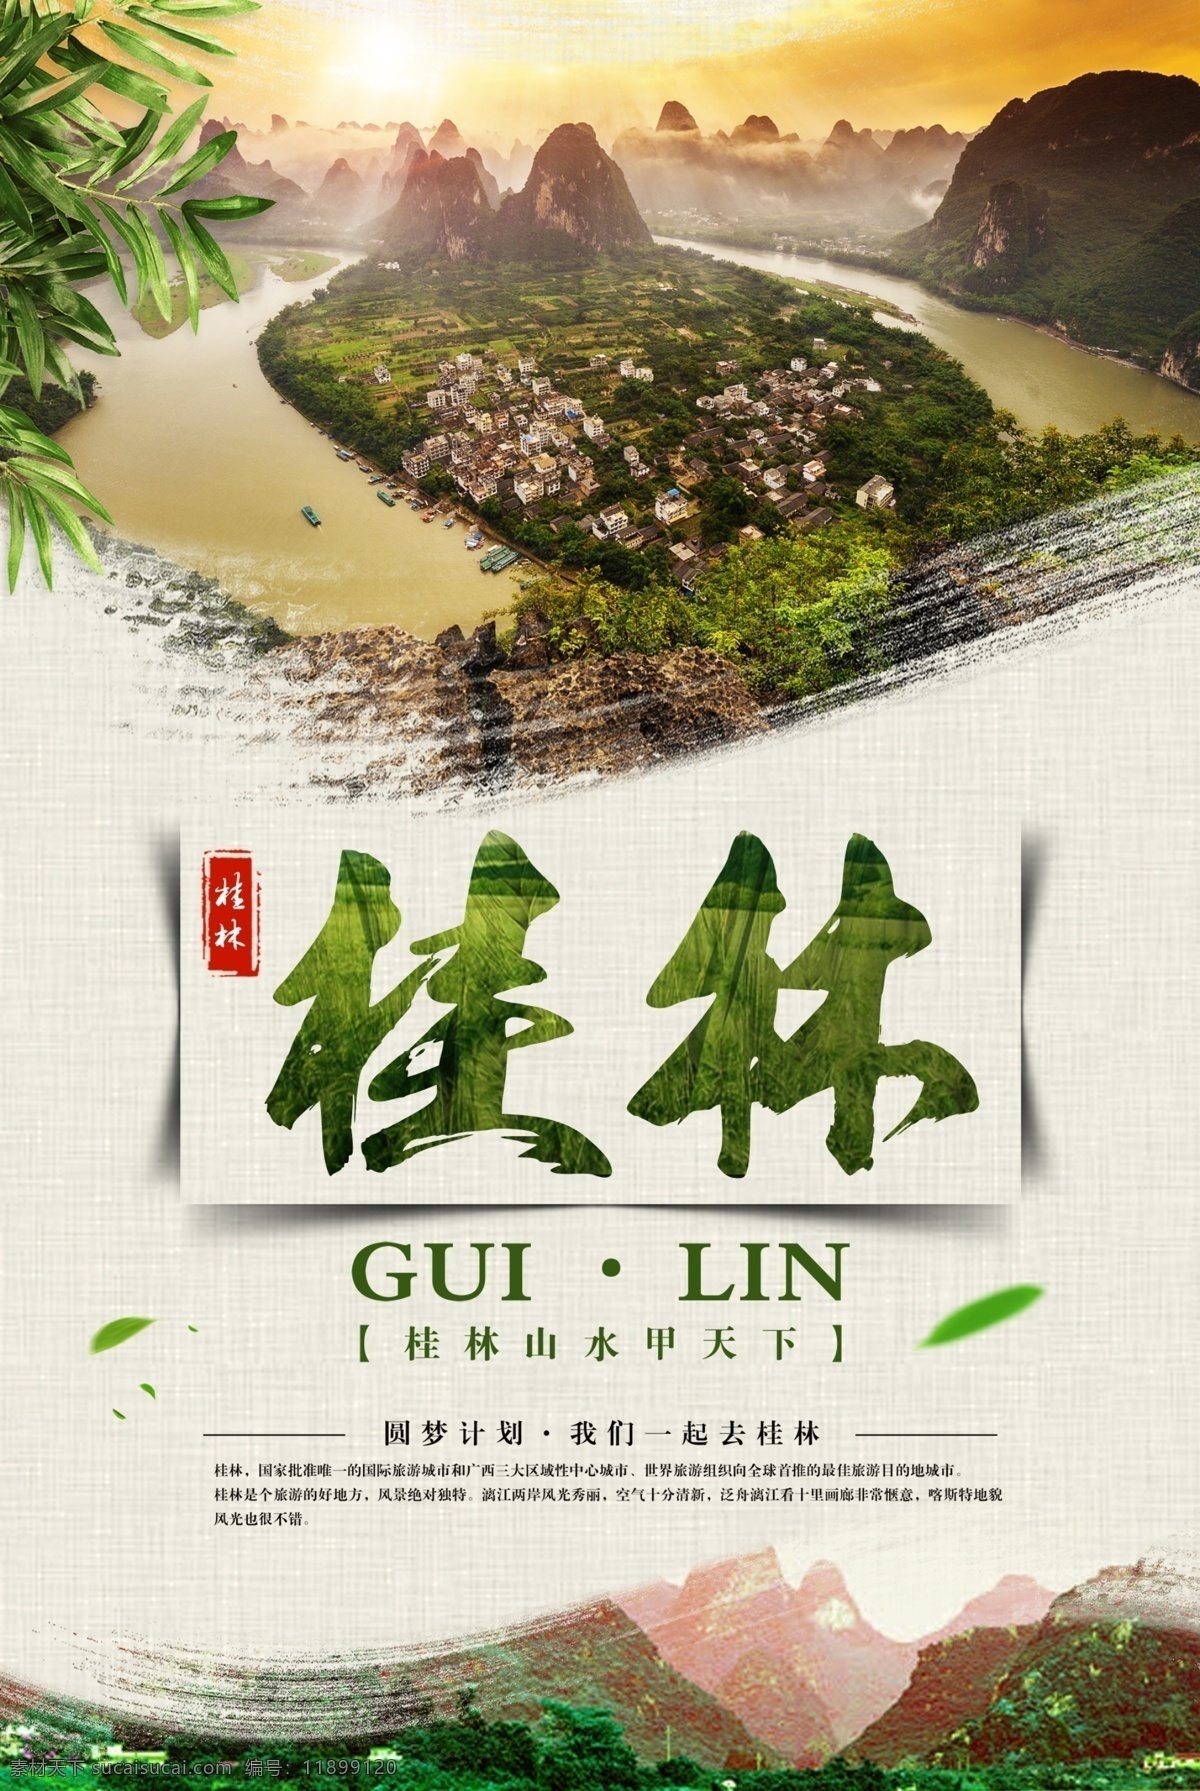 桂林图片 桂林 山水 漓江 旅游 旅行 海报 微海报